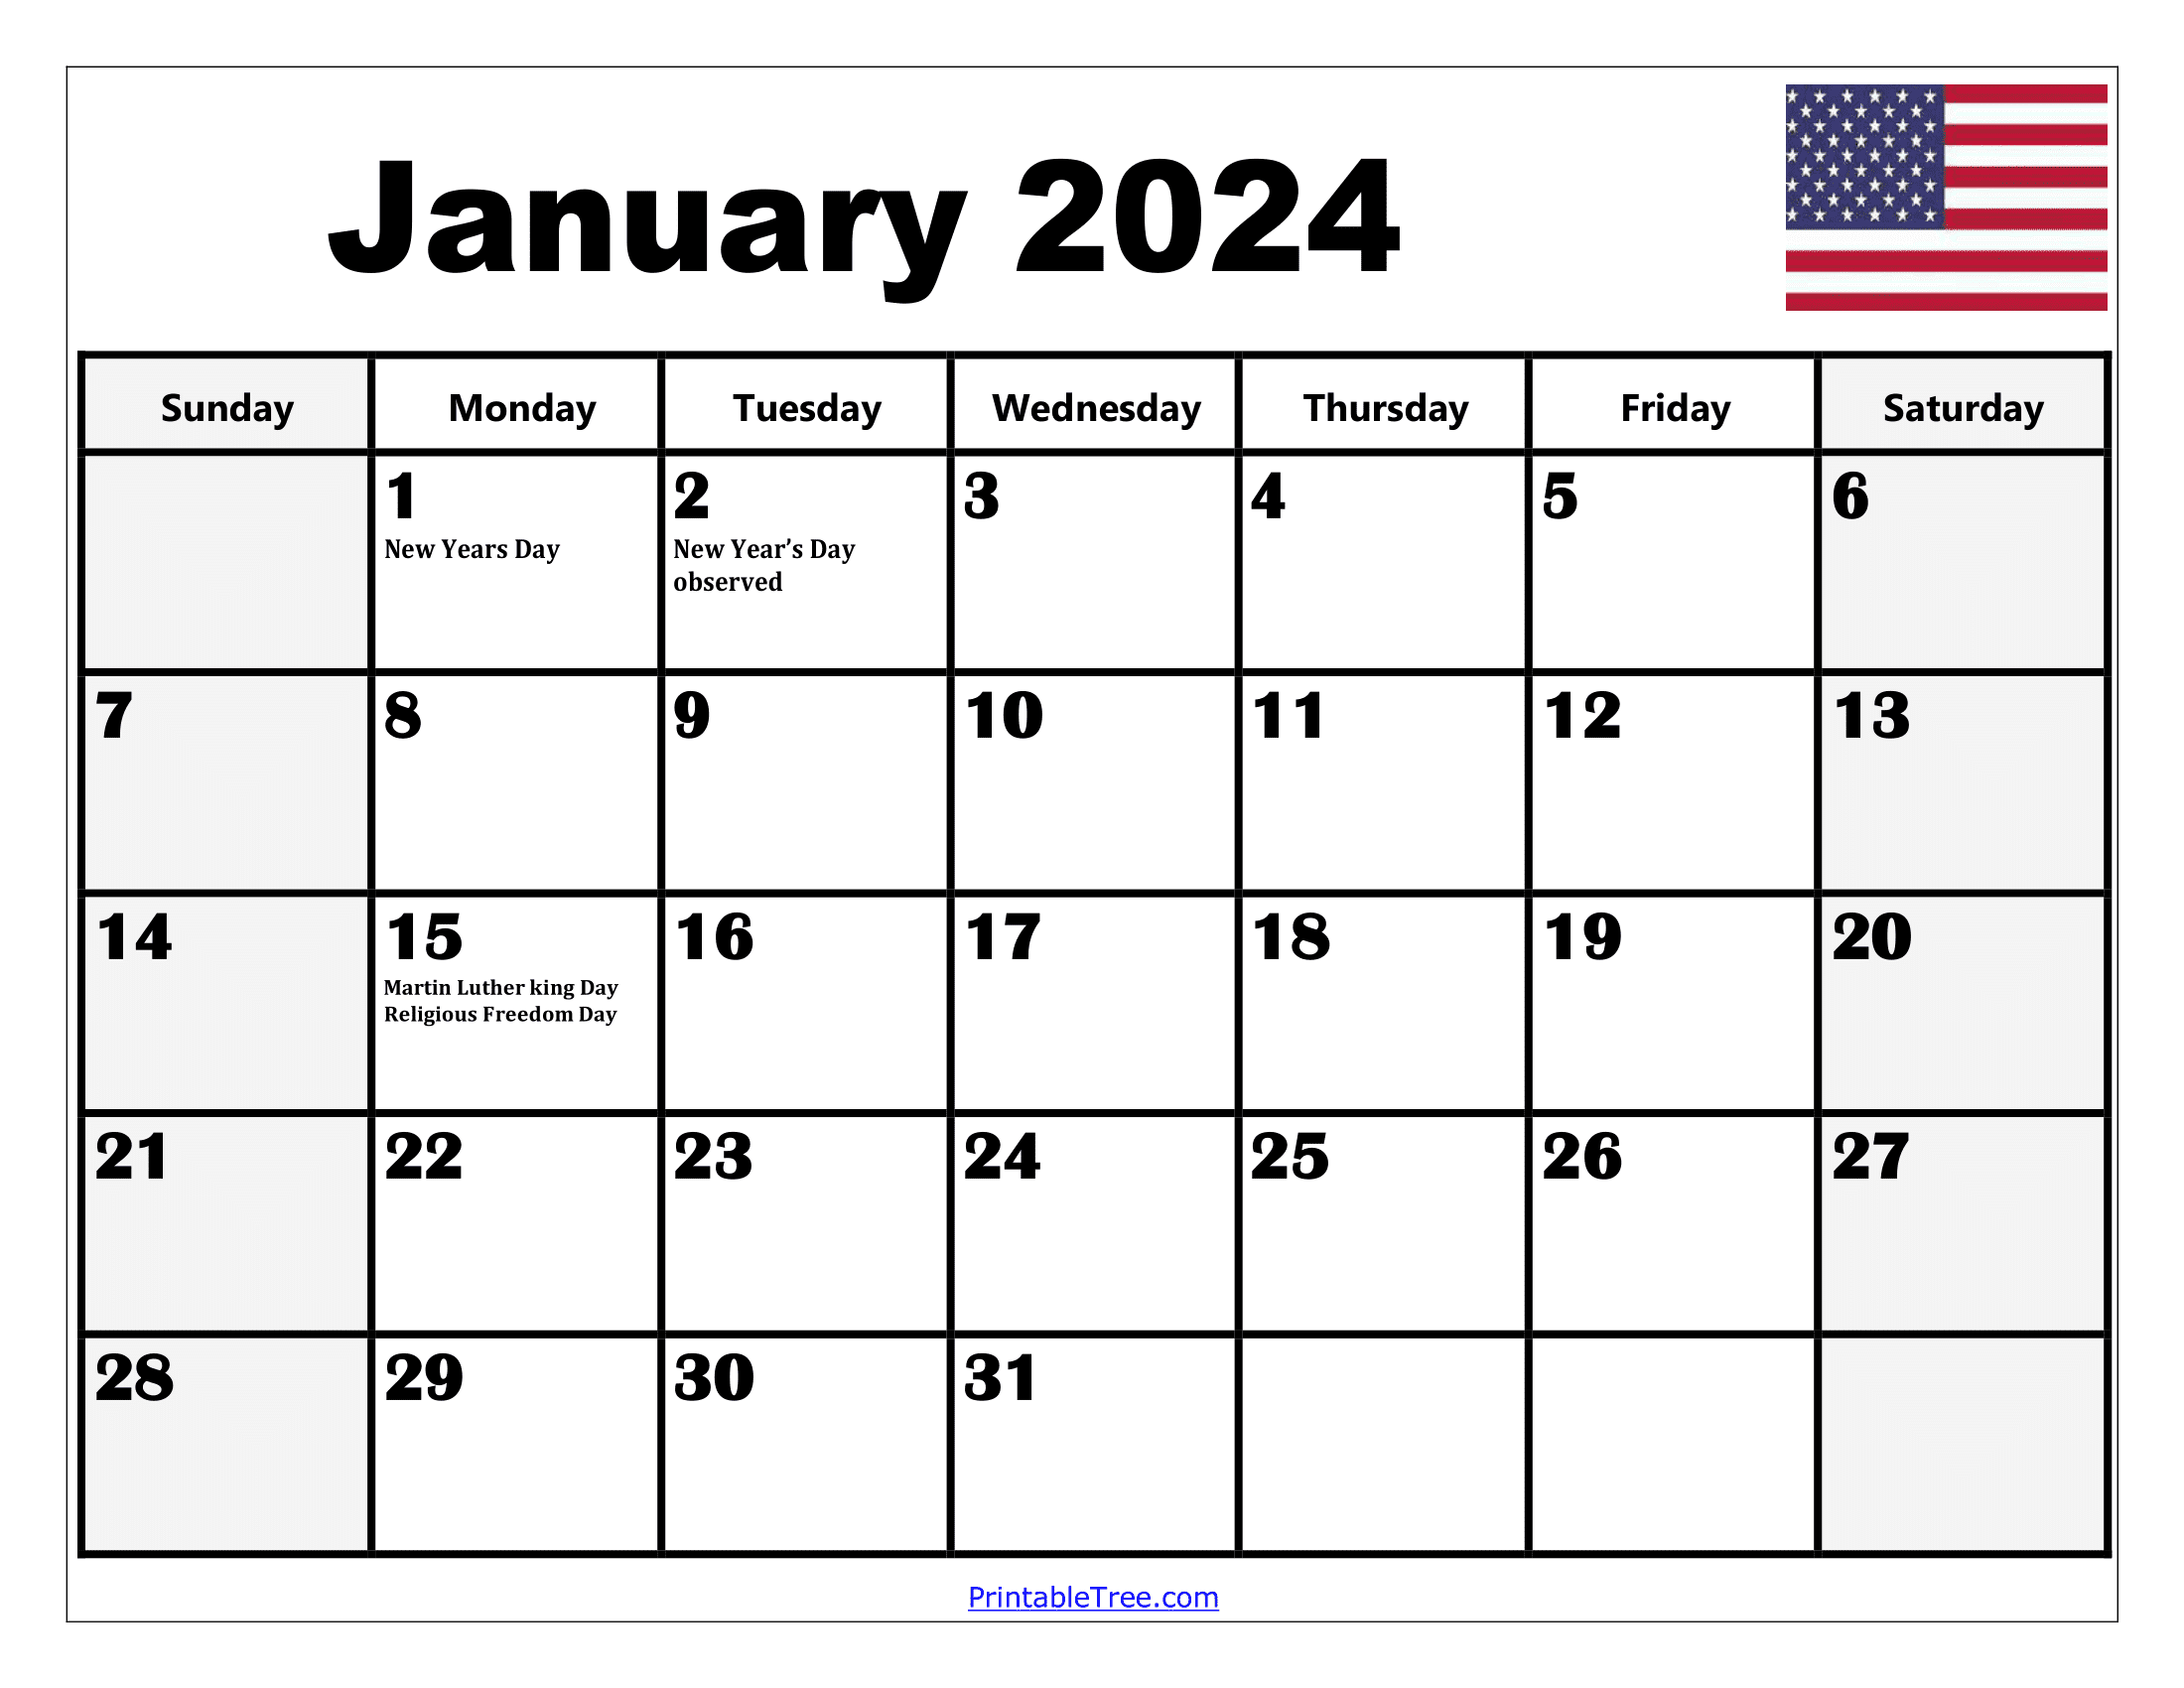 2024 Holiday Calendar Days Free Download Nov 2024 Calendar - Free Printable 2024 Calendar With Holidays Wincalendar